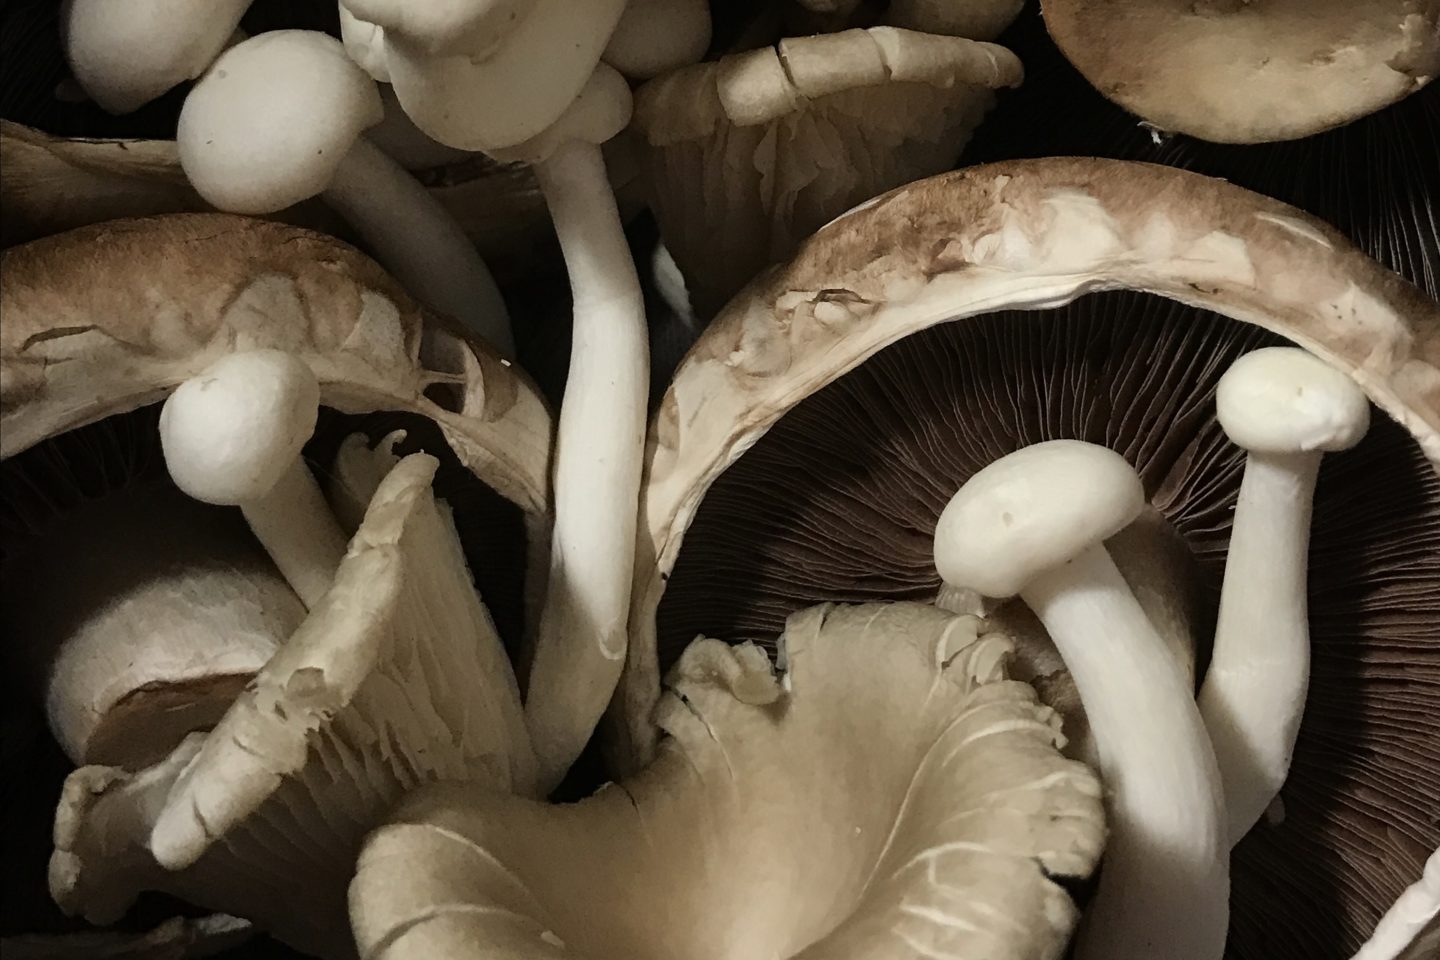 A pile of four varieties of edible mushrooms